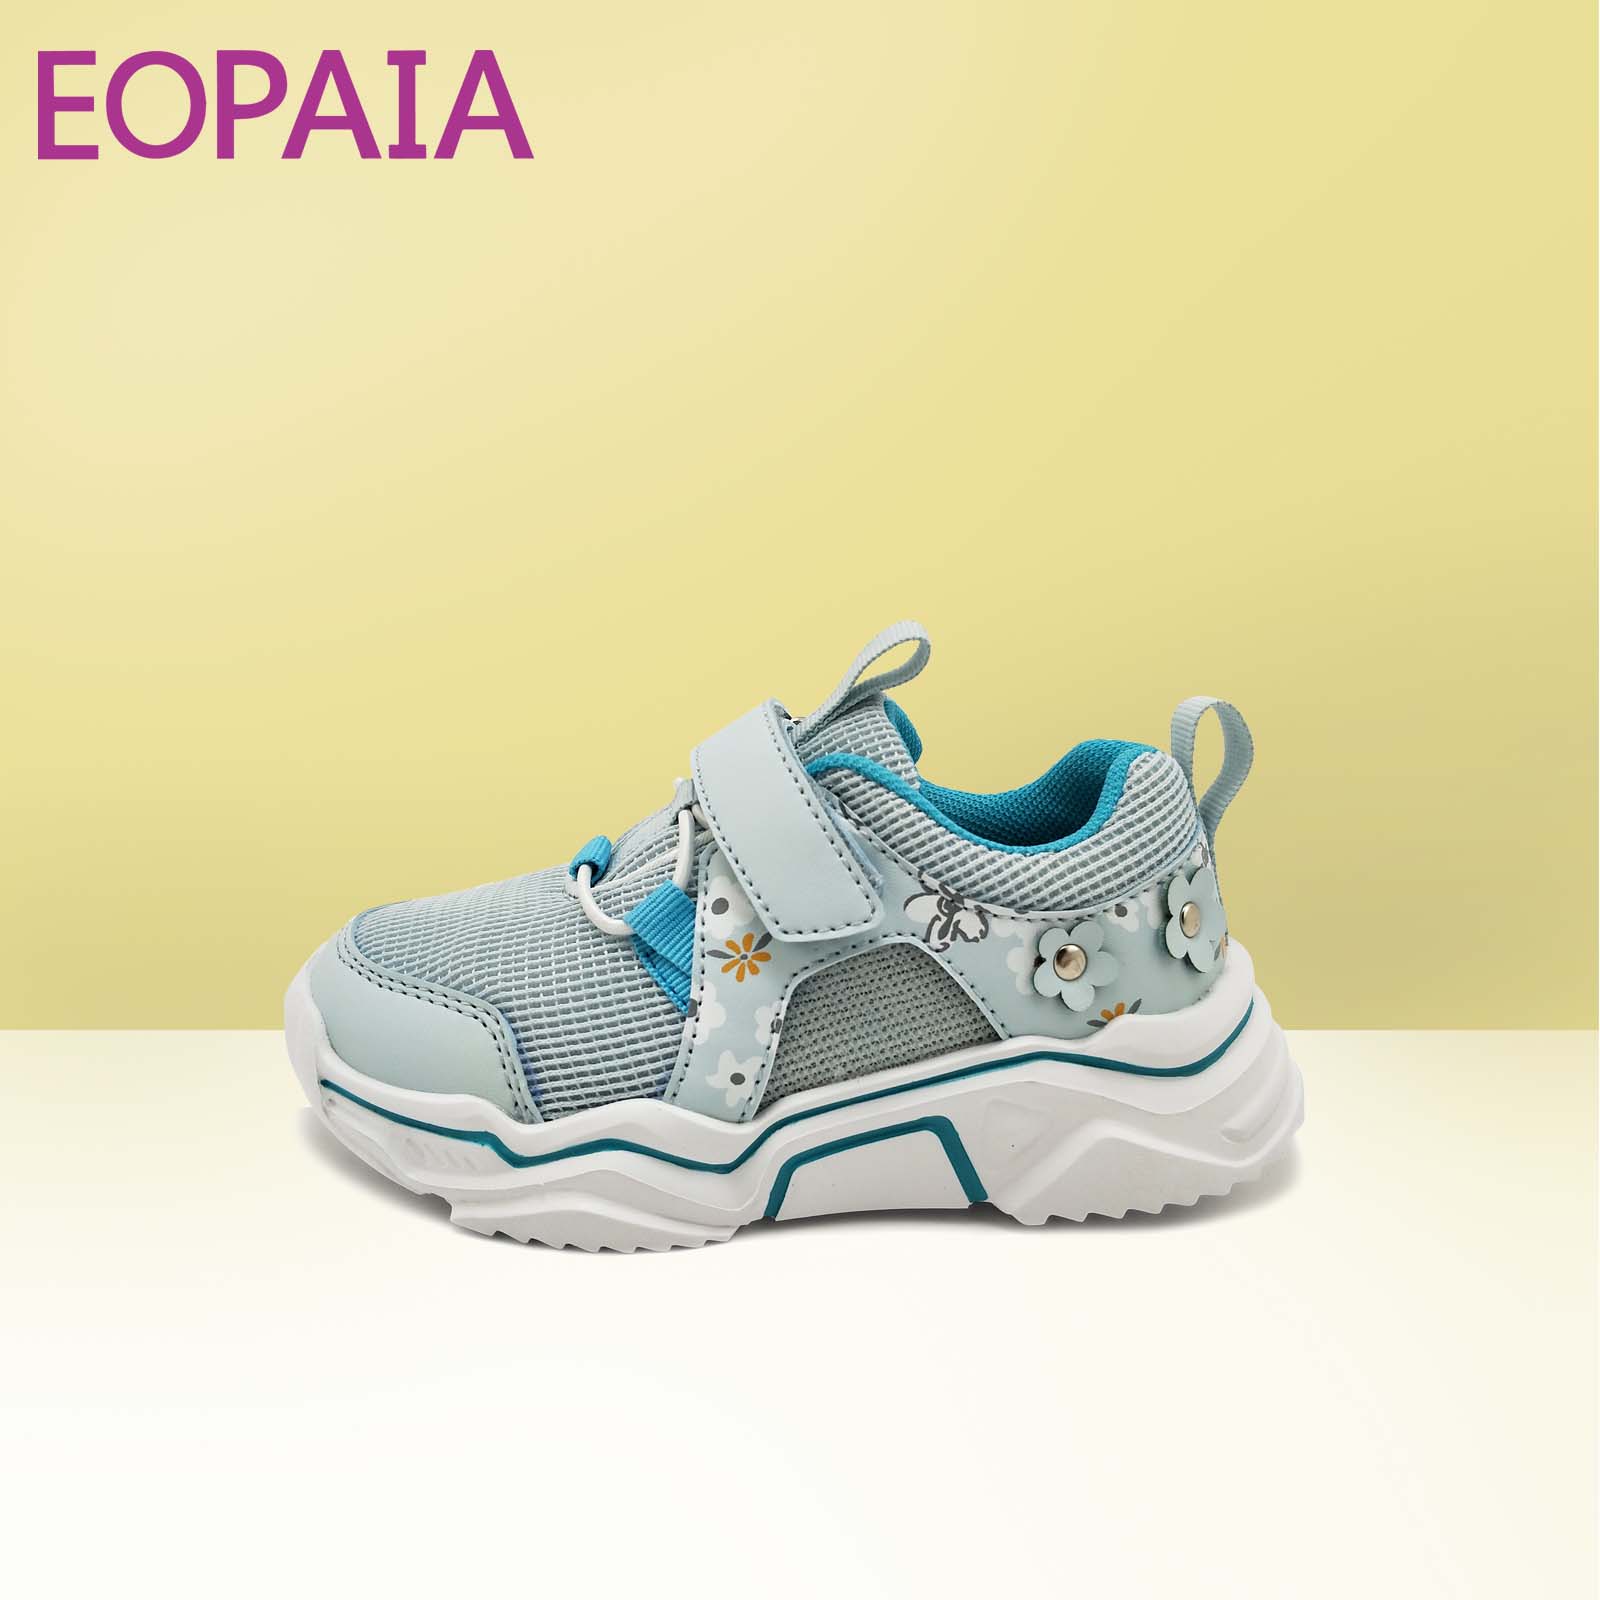 Zapatos para niños zapatos para niños zapatos de dibujos animados zapatos ligeros zapatos deportivos zapatos de malla